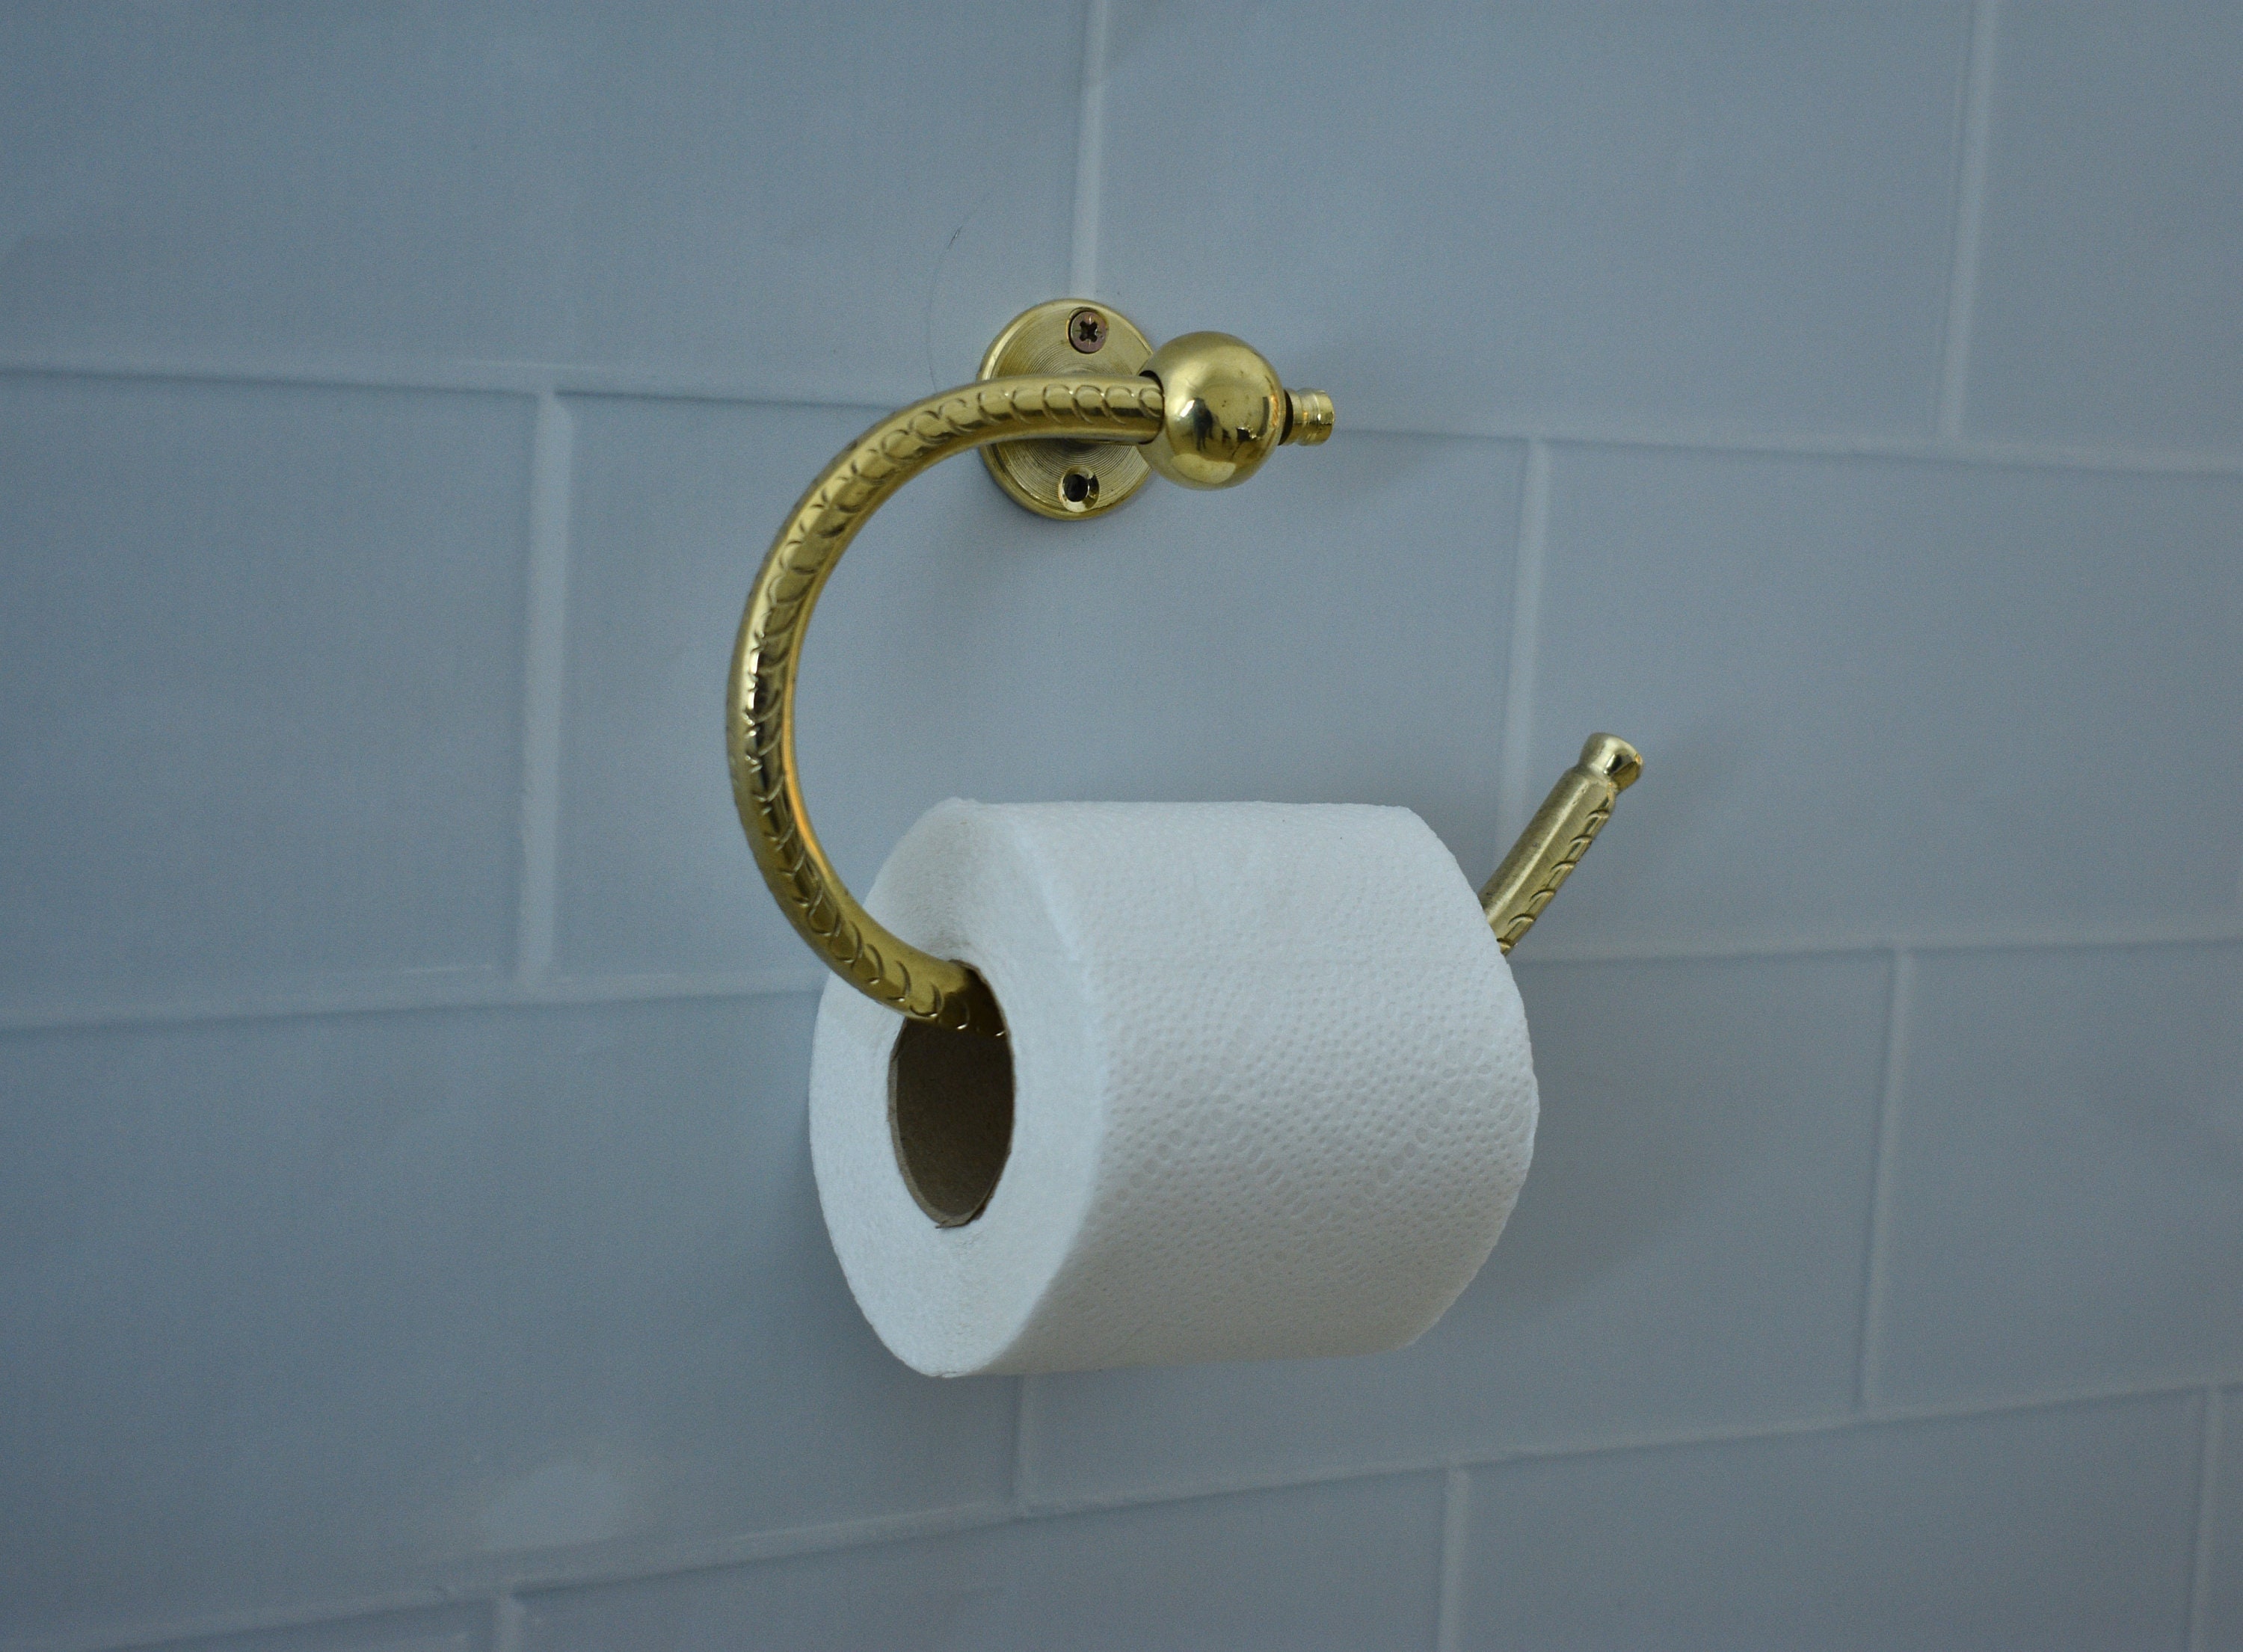 Abbianna Toilet Paper Holder Stand